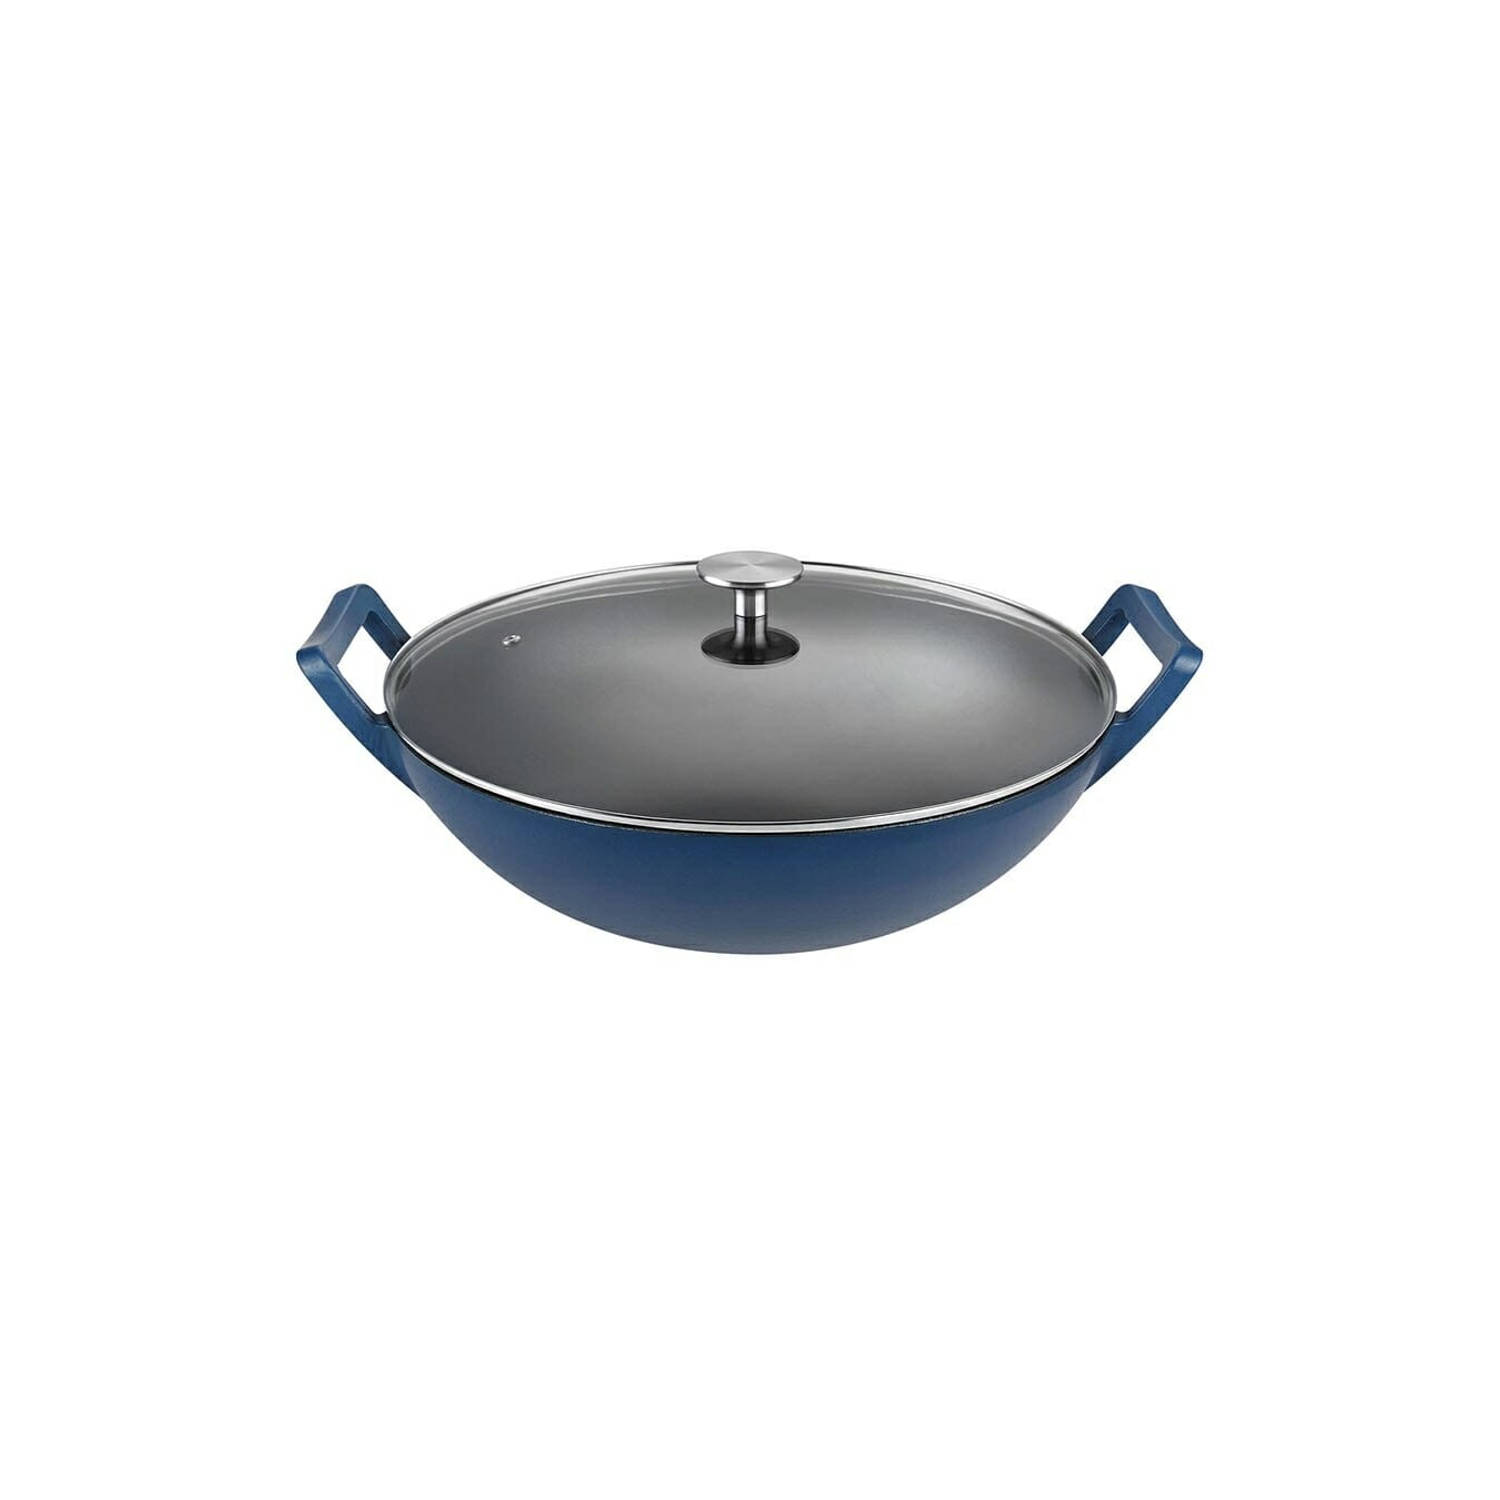 Buccan Hamersley Gietijzeren wokpan 36cm Blauw